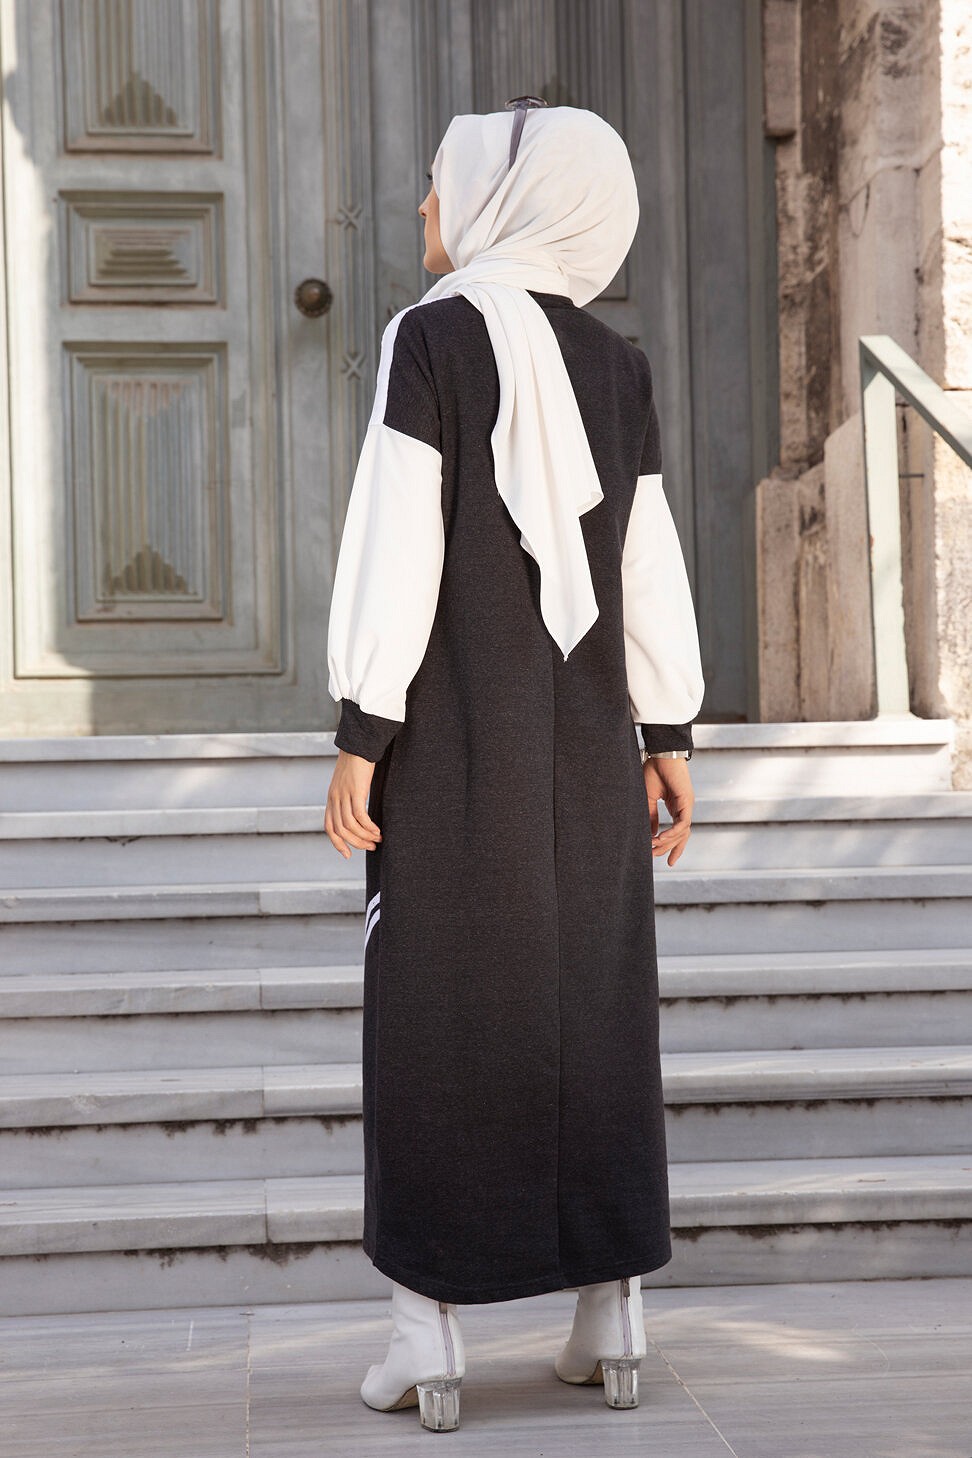 Jupe plissée pour femme (Vetement pas cher et Mode Hijab) - Couleur bordeaux